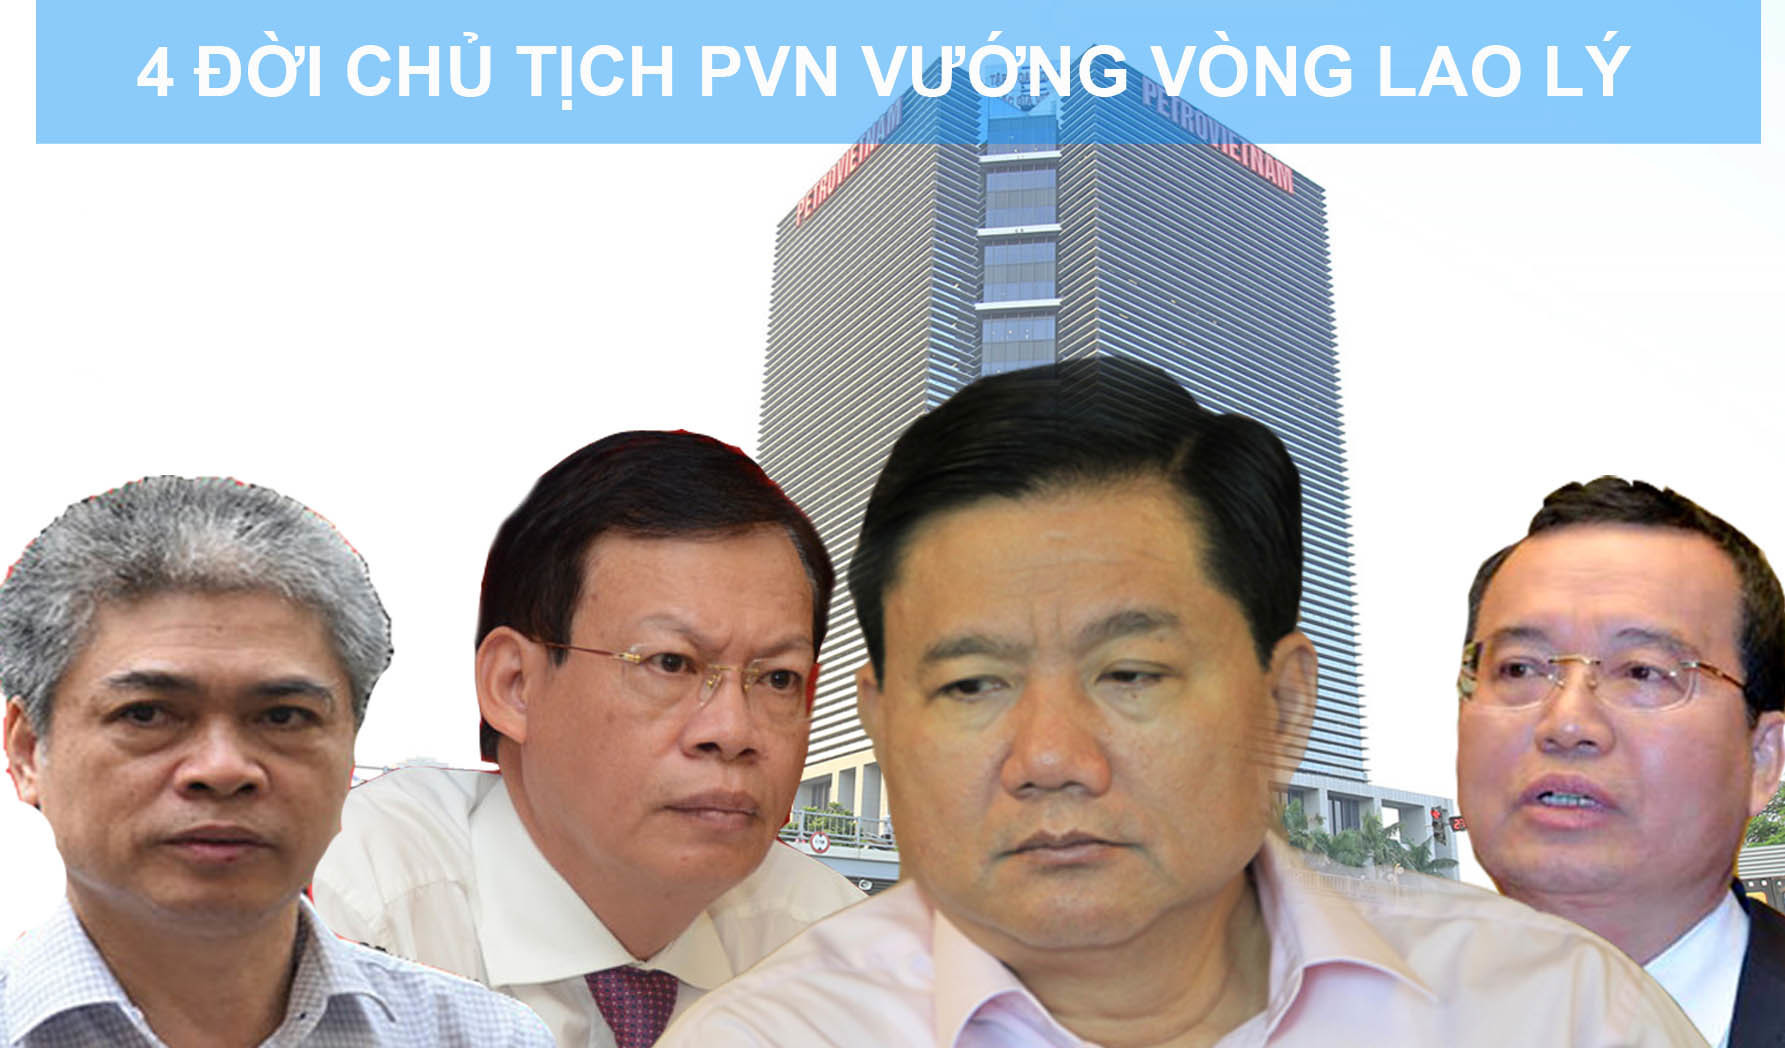 Sếp lớn PVN thời ông Đinh La Thăng: Cả loạt từ chức, vướng lao lý